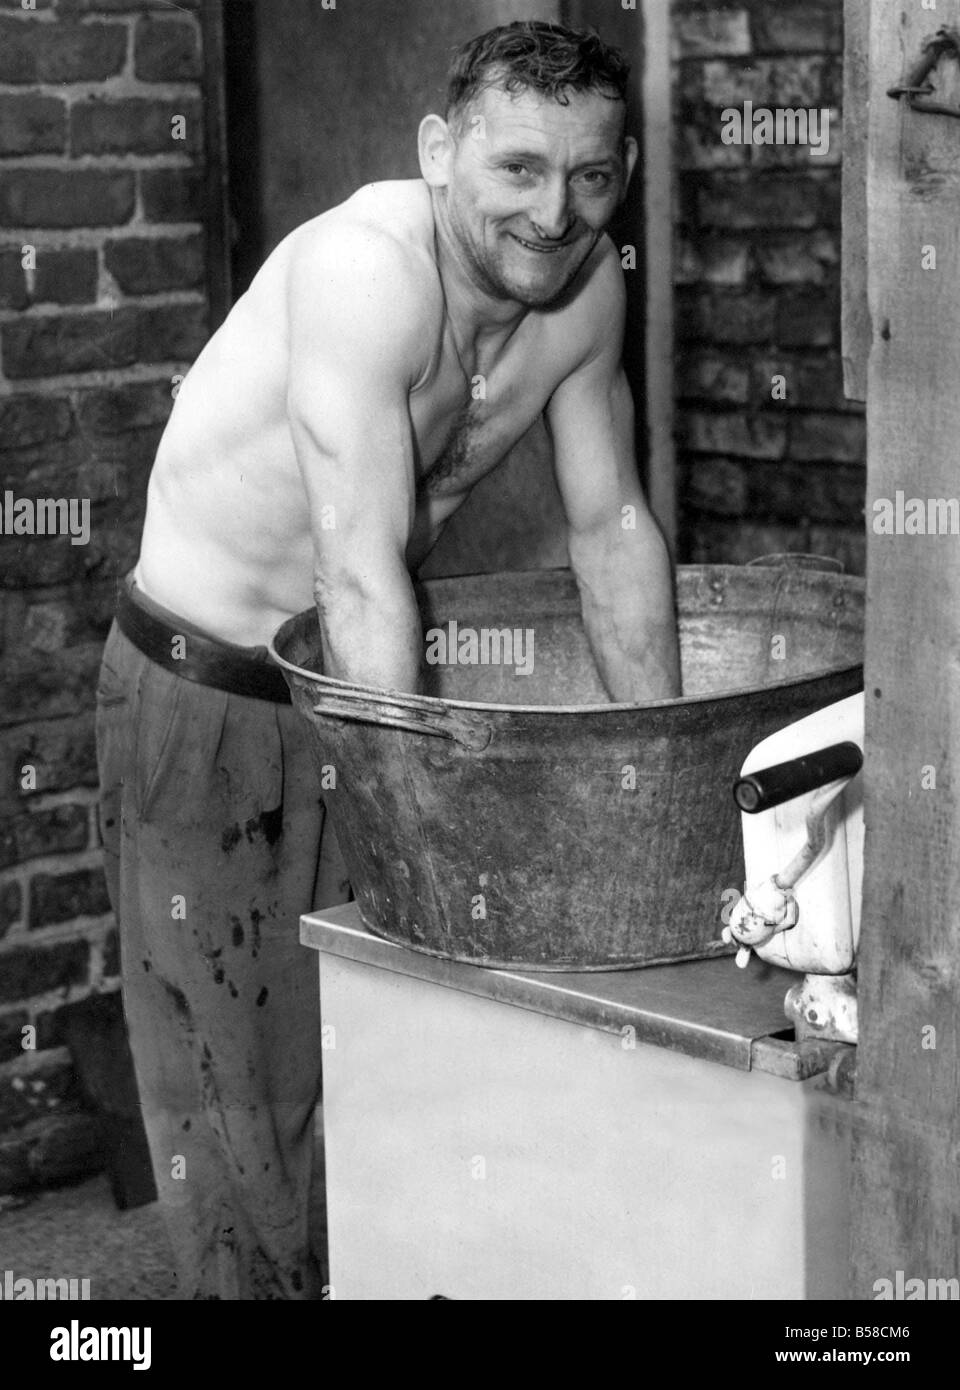 Edward Robson lave dans une vieille baignoire d'étain c'est probablement le temps de l'ast il va utiliser parce que la nouvelle tête à ciel ouvert aujourd'hui les bains Banque D'Images